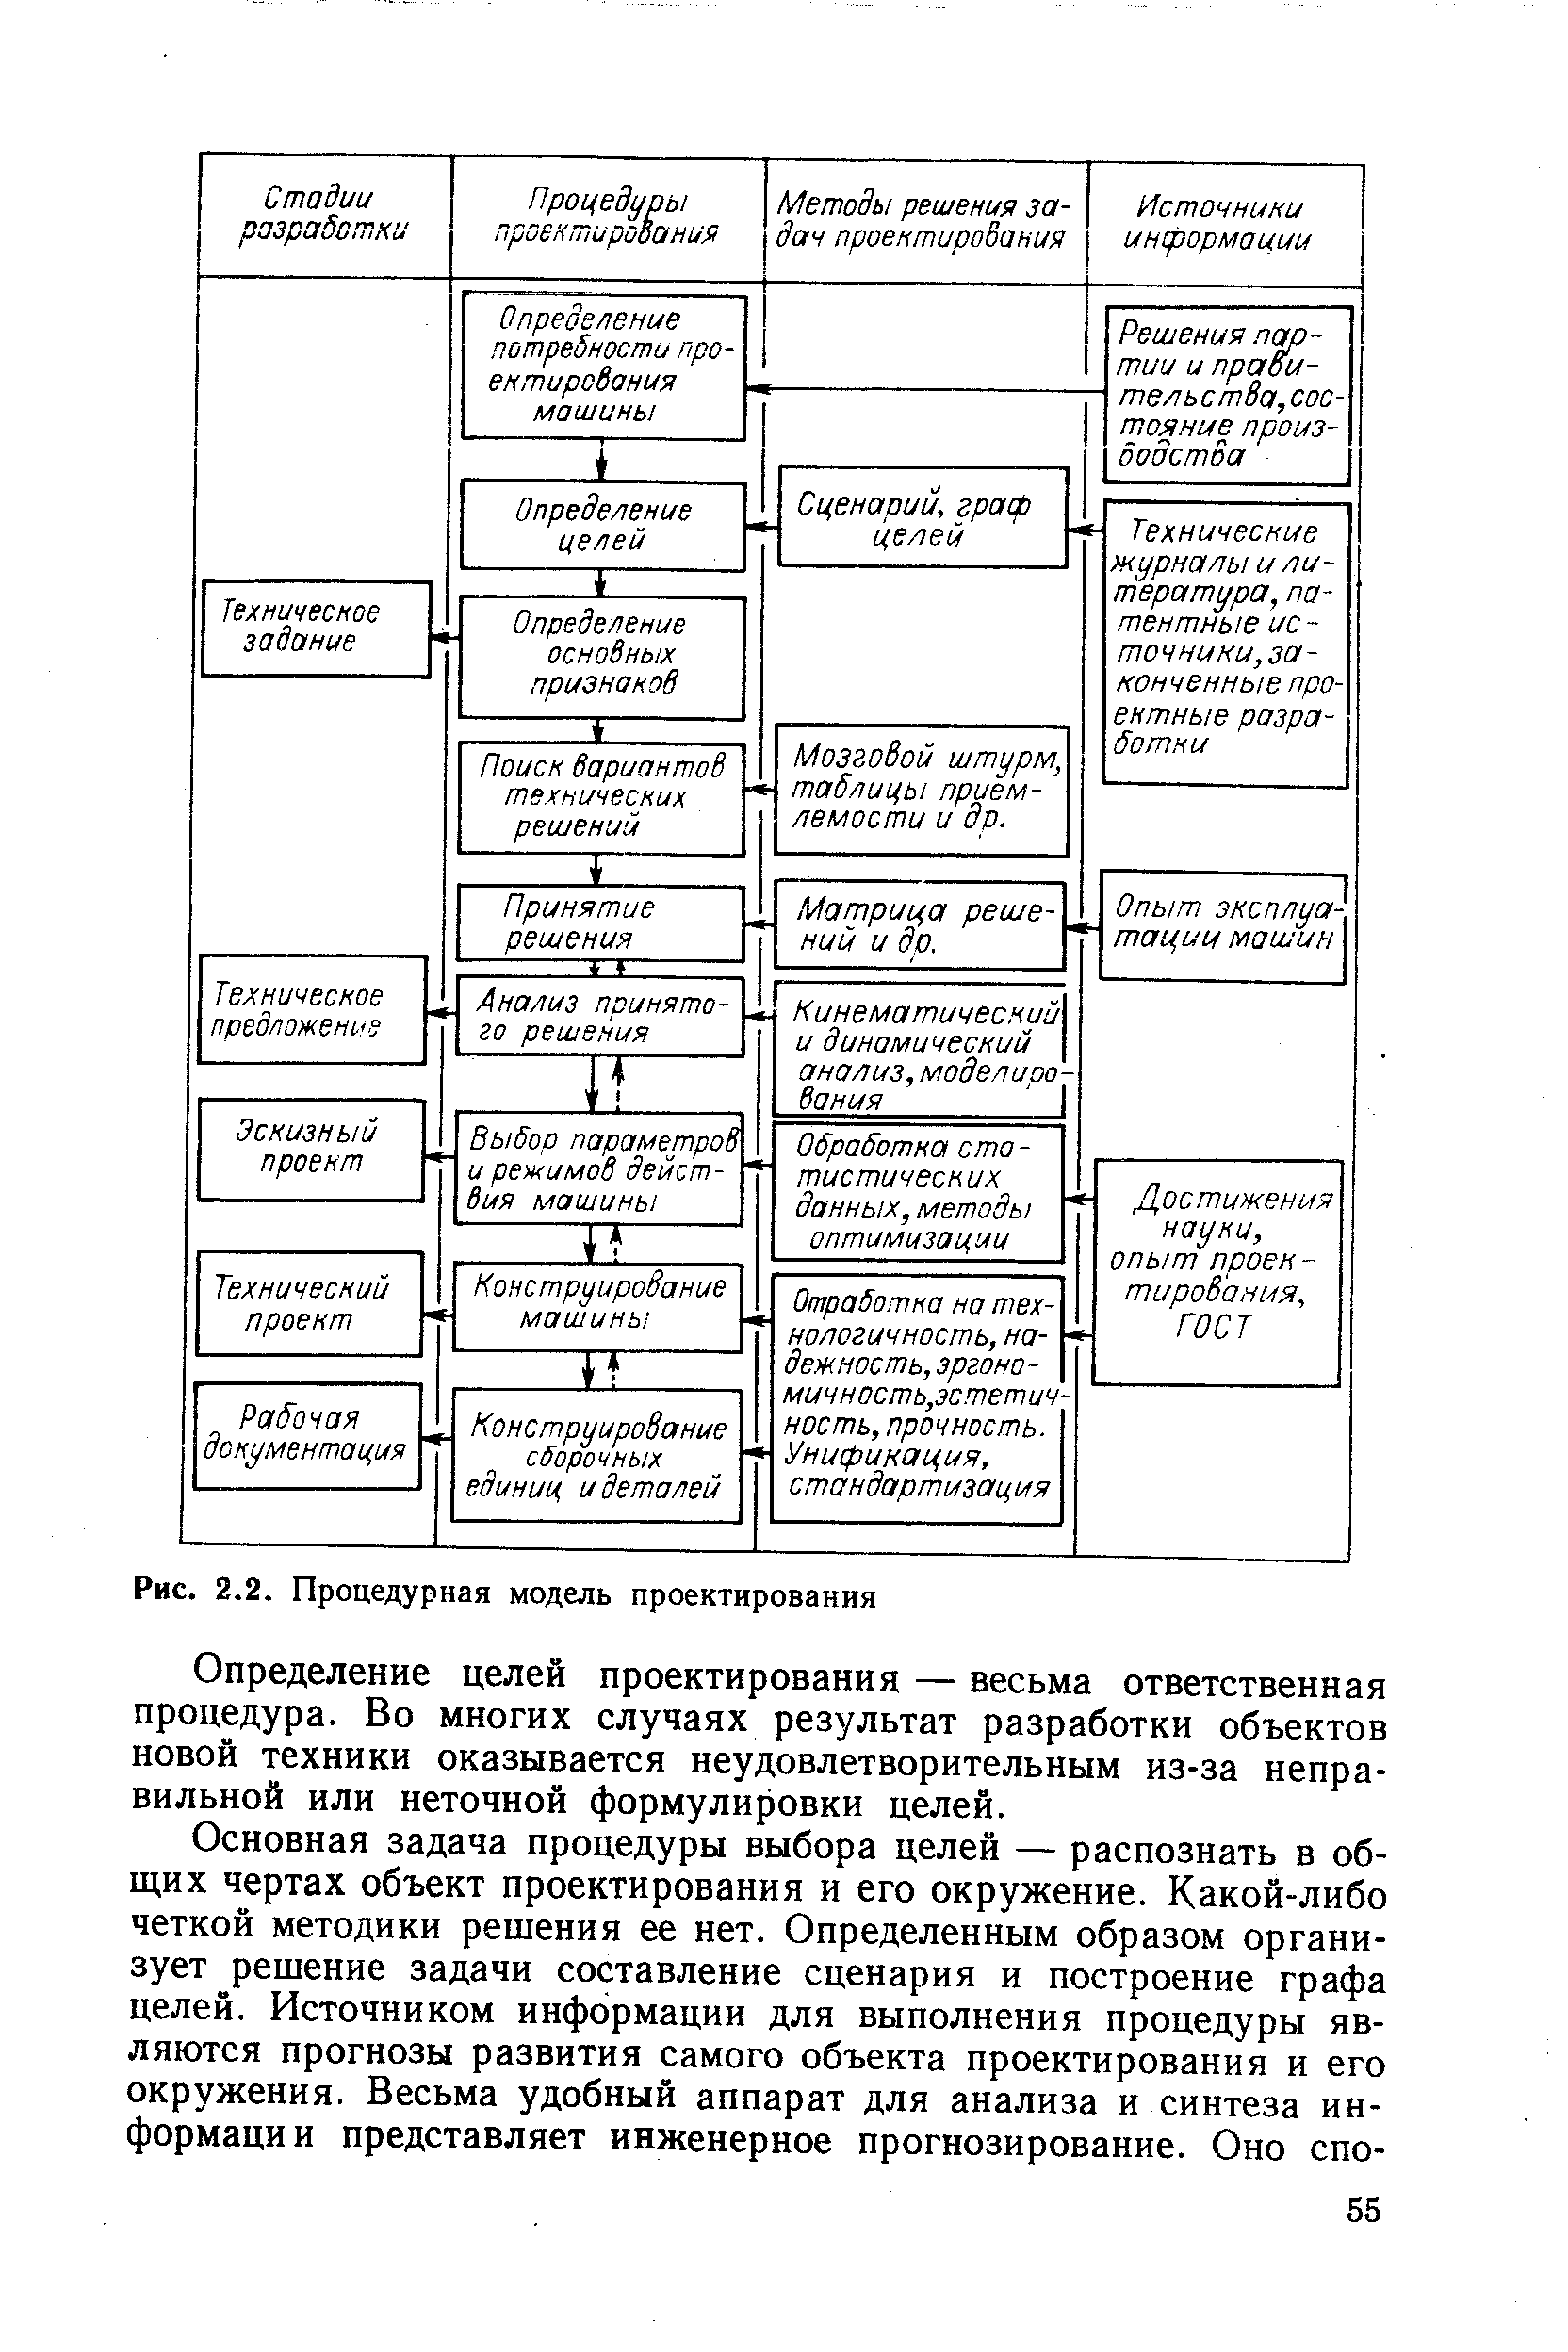 Рис. 2.2. Процедурная модель проектирования
